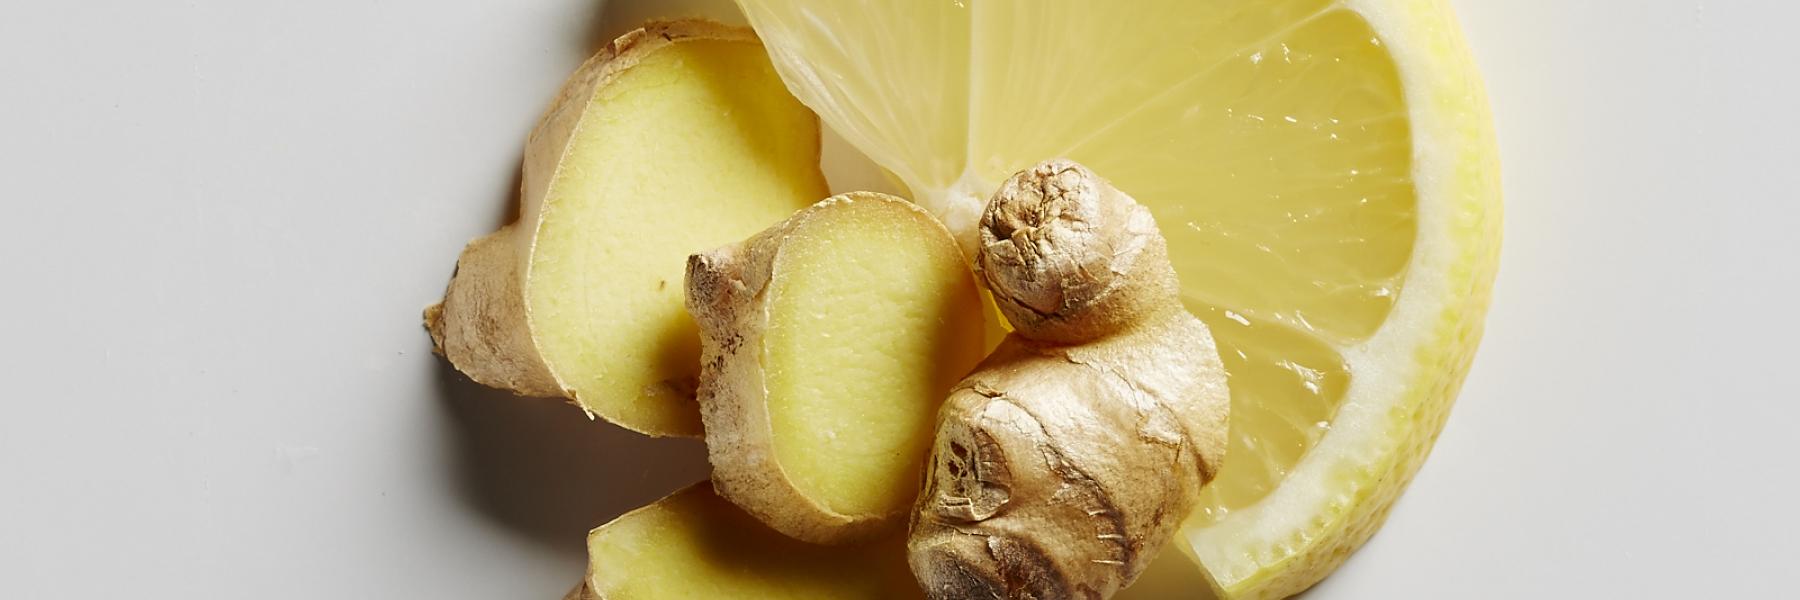 خلطة الزنجبيل والليمون لخسارة الوزن